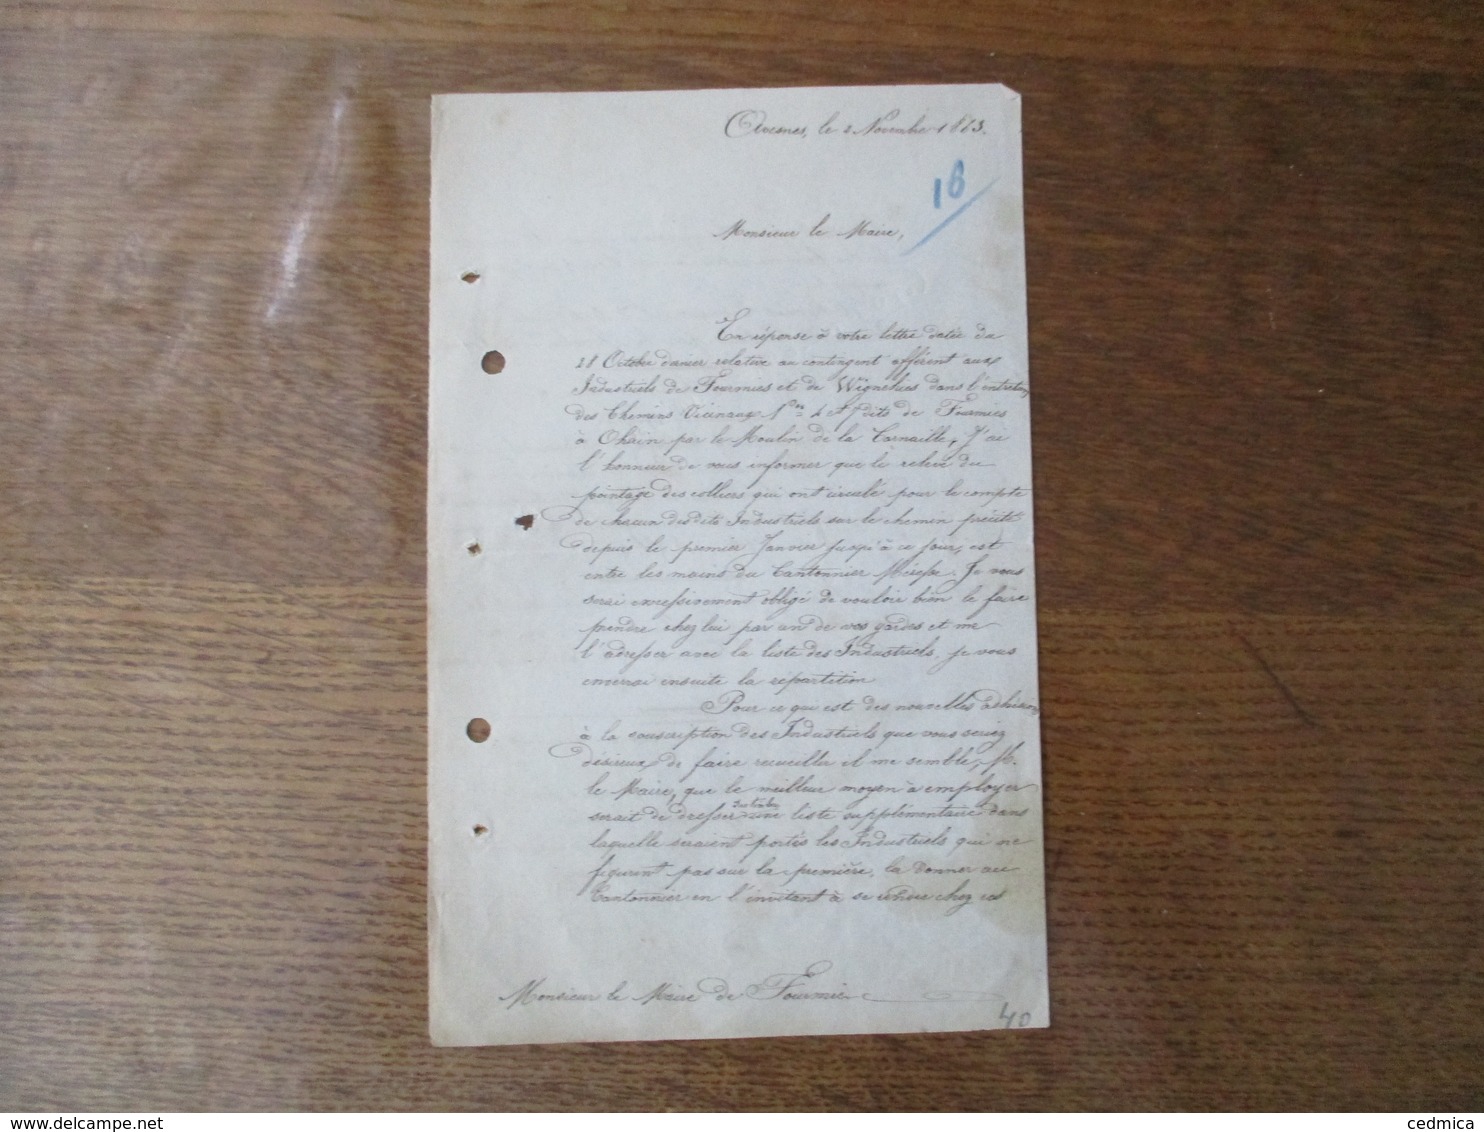 AVESNES LE 2 NOVEMBRE 1863 COURRIER DE L'AGENT VOYER SIGNE RINGUET AU MAIRE DE FOURMIES - Manuscripts